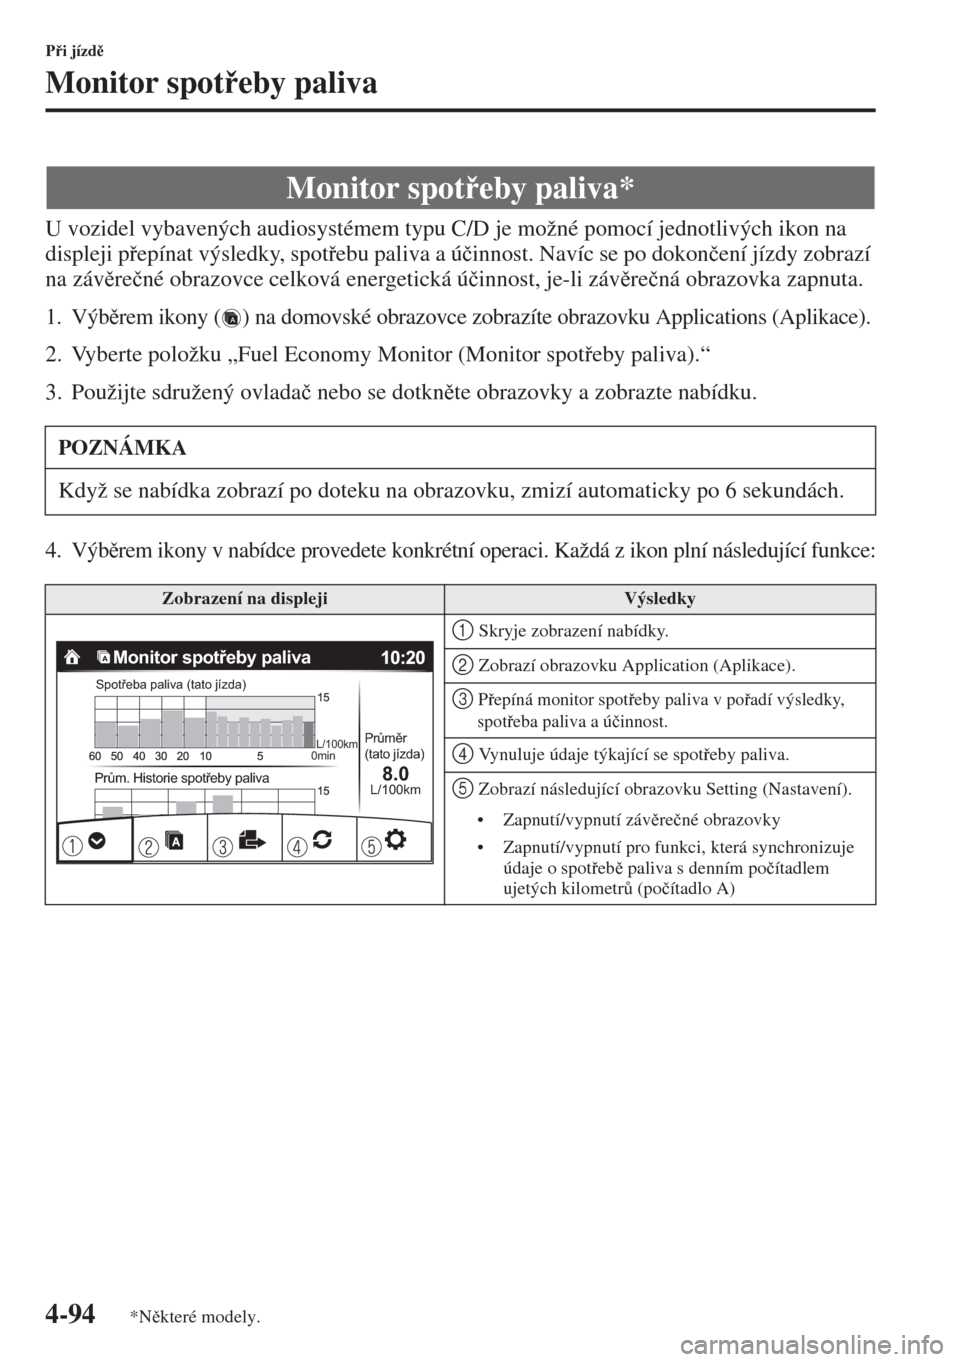 MAZDA MODEL 3 HATCHBACK 2015  Návod k obsluze (in Czech) 4-94
Pi jízd
Monitor spoteby paliva
U vozidel vybavených audiosystémem typu C/D je možné pomocí jednotlivých ikon na 
displeji pepínat výsledky, spotebu paliva a ú�þinnost. Navíc